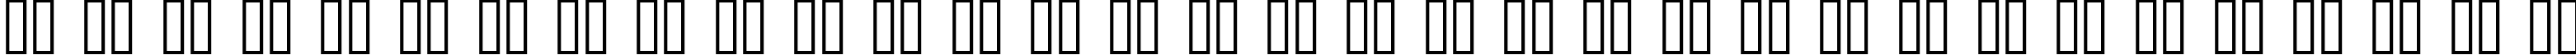 Пример написания русского алфавита шрифтом FarCry  ExtraBold